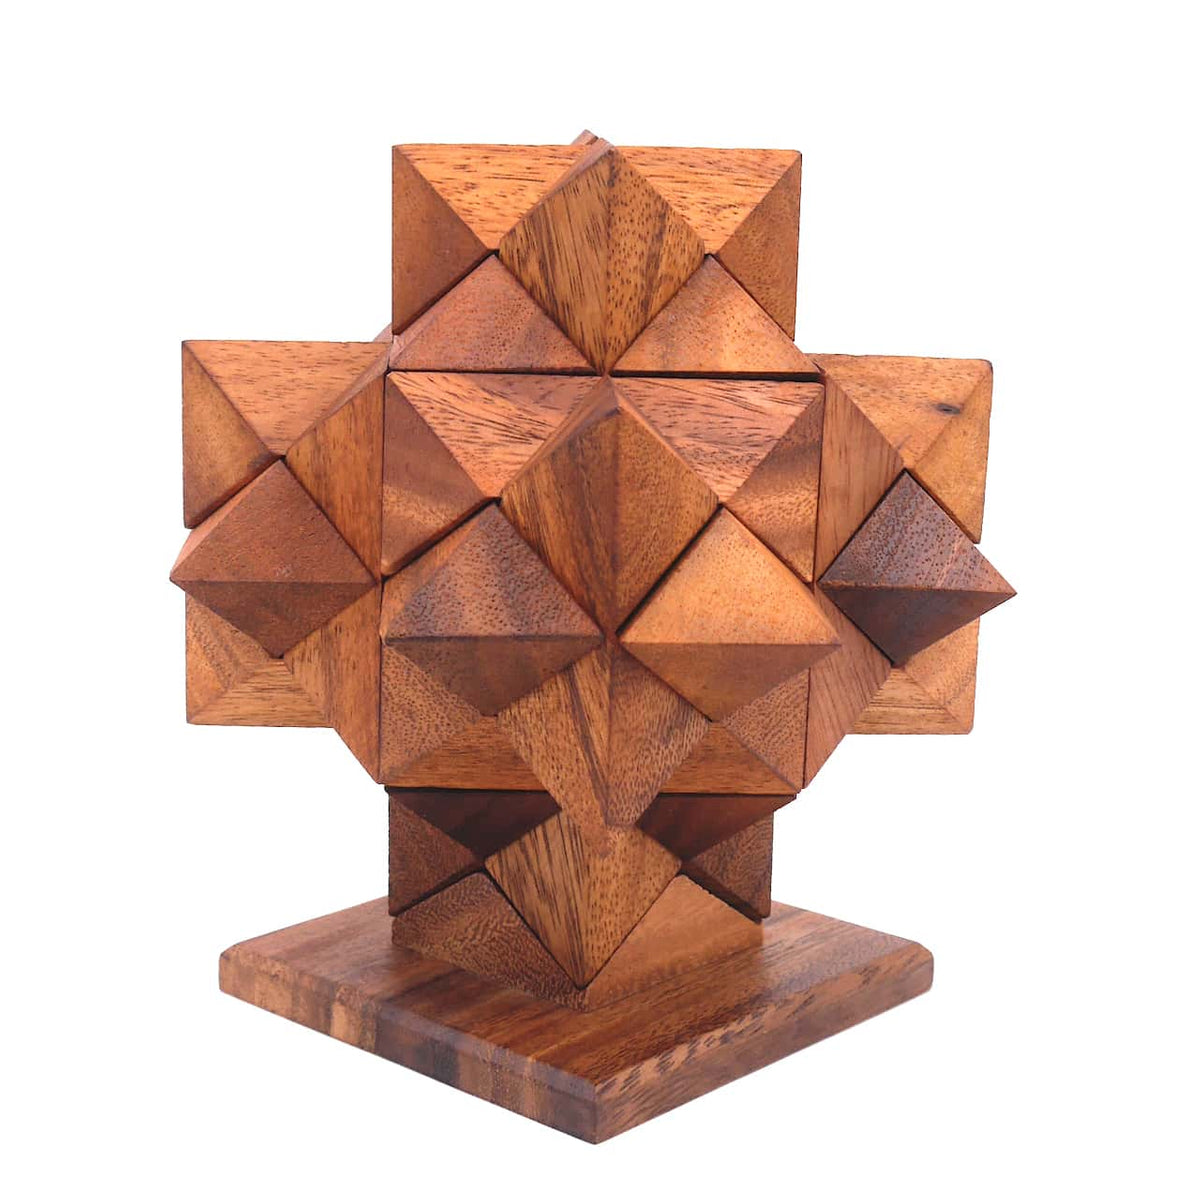 Zusammengebautes 3d-Puzzle aus Holz in Form eines Sterns auf einem Holzständer.